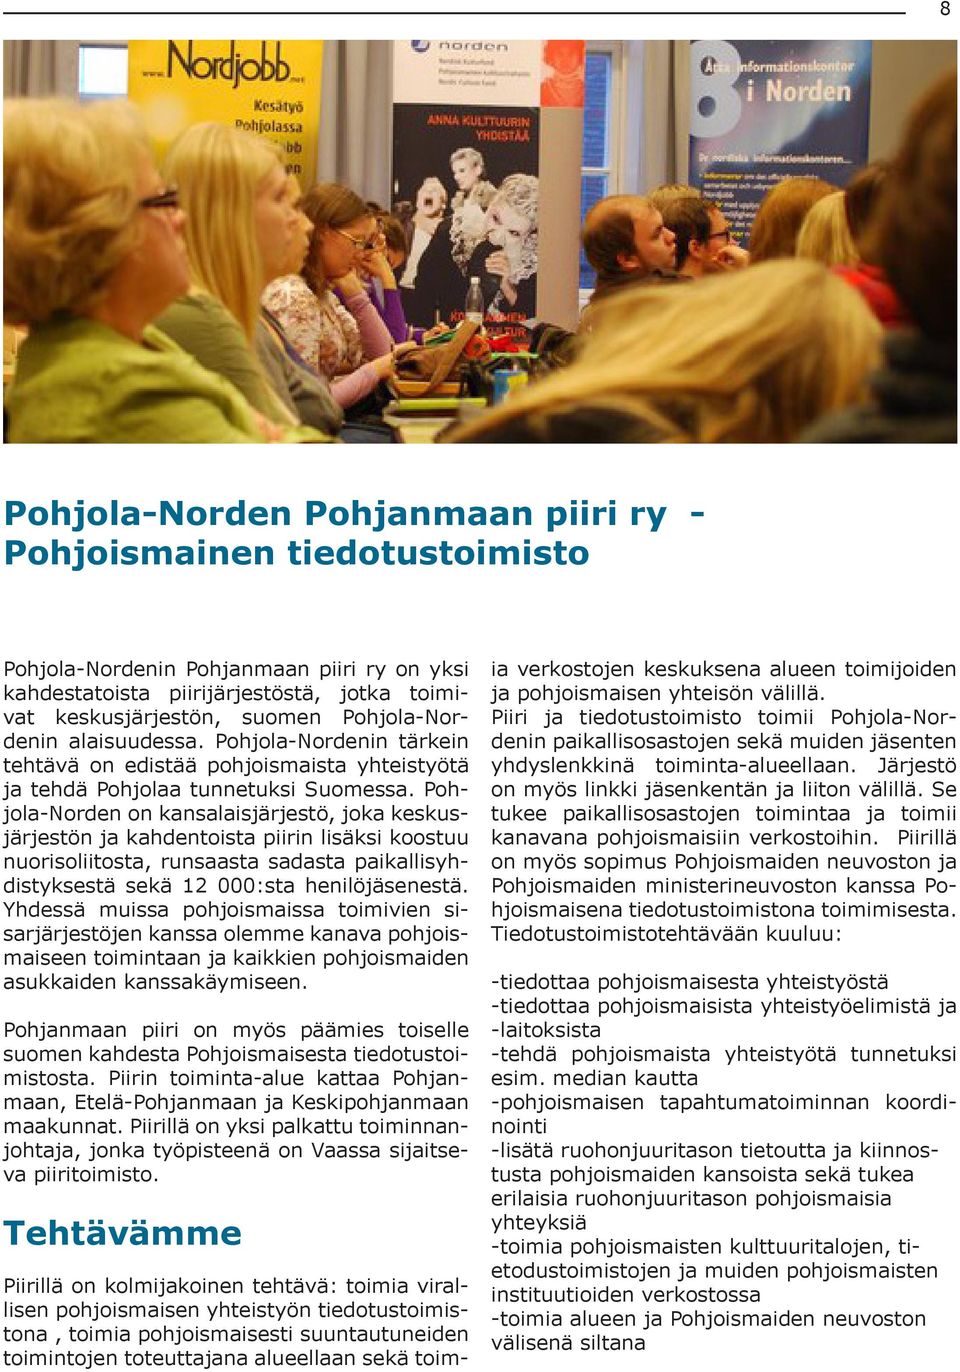 Pohjola-Norden on kansalaisjärjestö, joka keskusjärjestön ja kahdentoista piirin lisäksi koostuu nuorisoliitosta, runsaasta sadasta paikallisyhdistyksestä sekä 12 000:sta henilöjäsenestä.